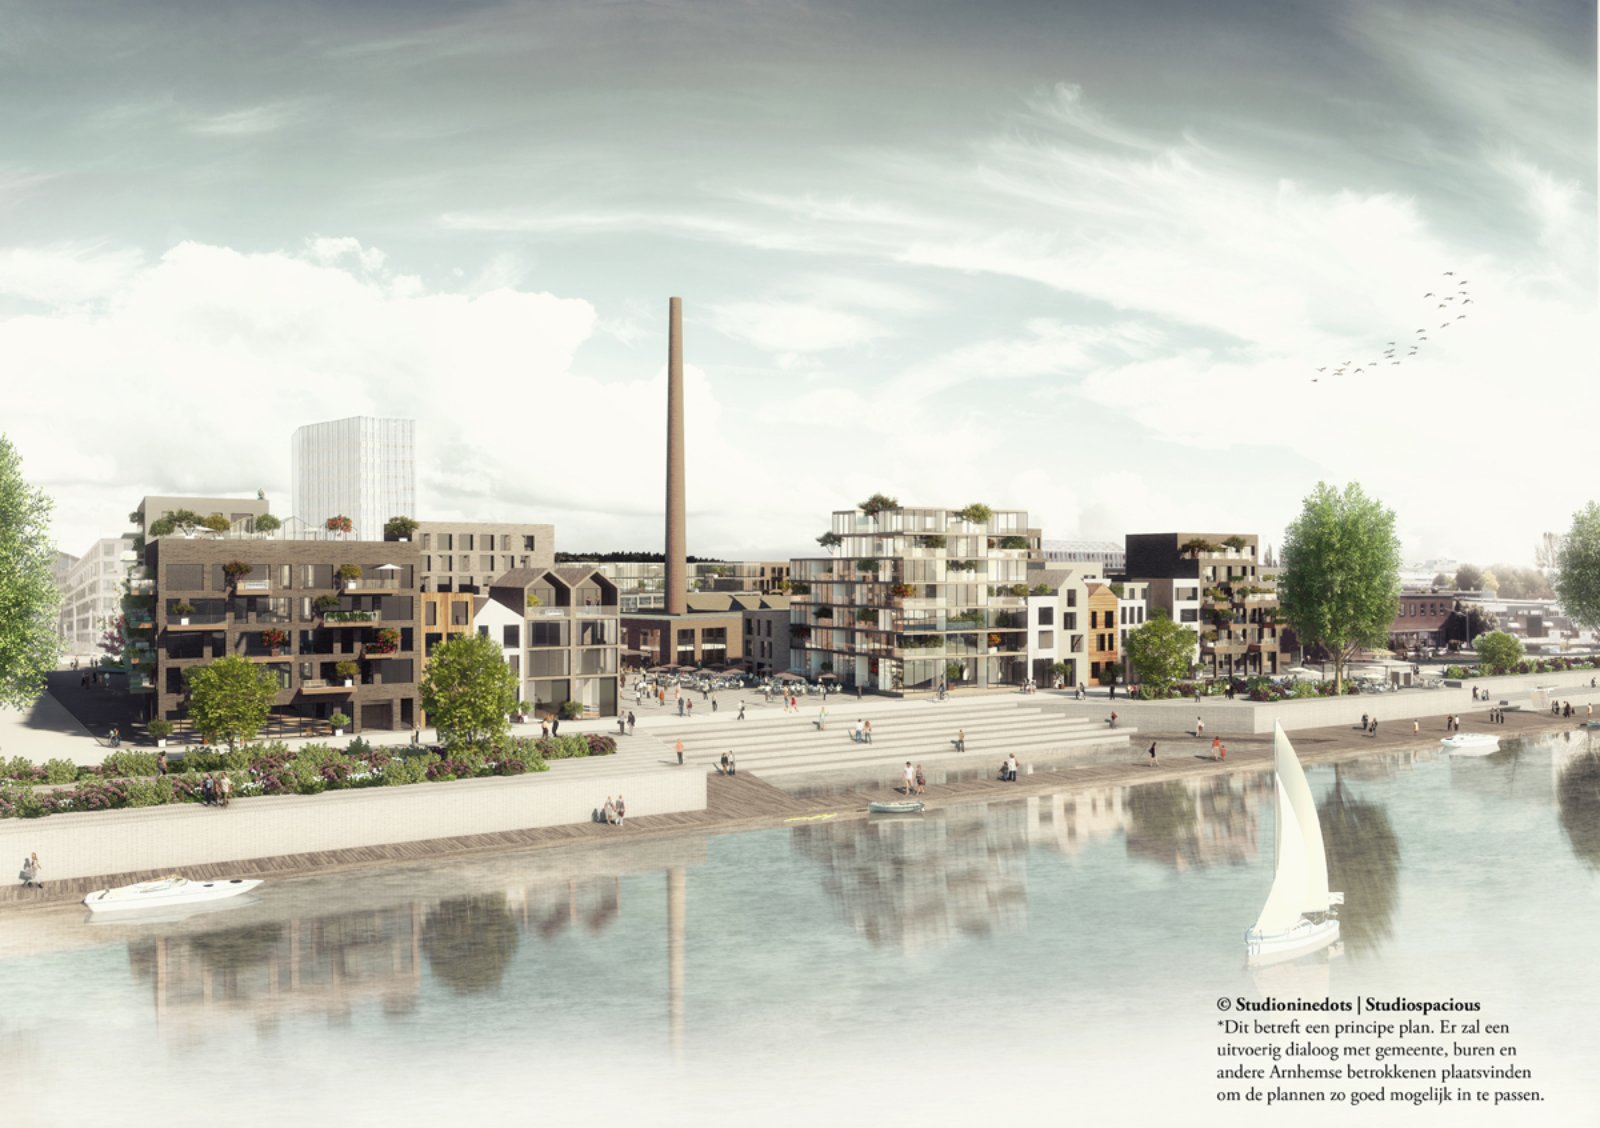 The Melkfabriek becomes Arnhem’s new hotspot